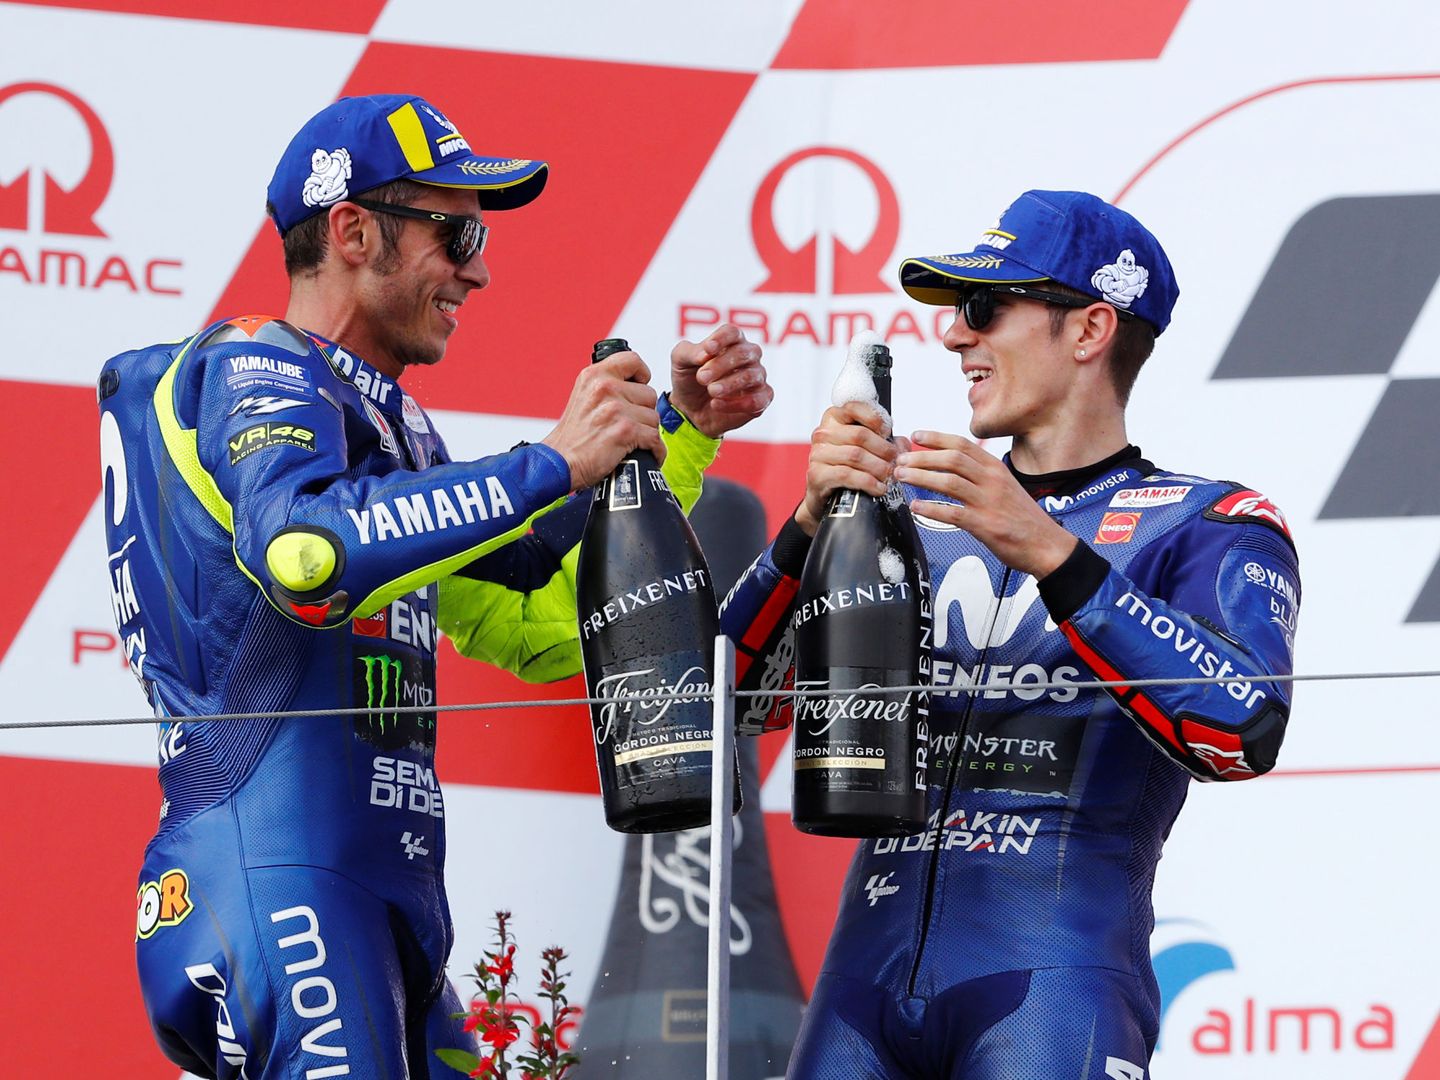 Las dos Yamahas oficiales de Rossi y Viñales acompañaron a Márquez en el podio Sachsenring. (Reuters)